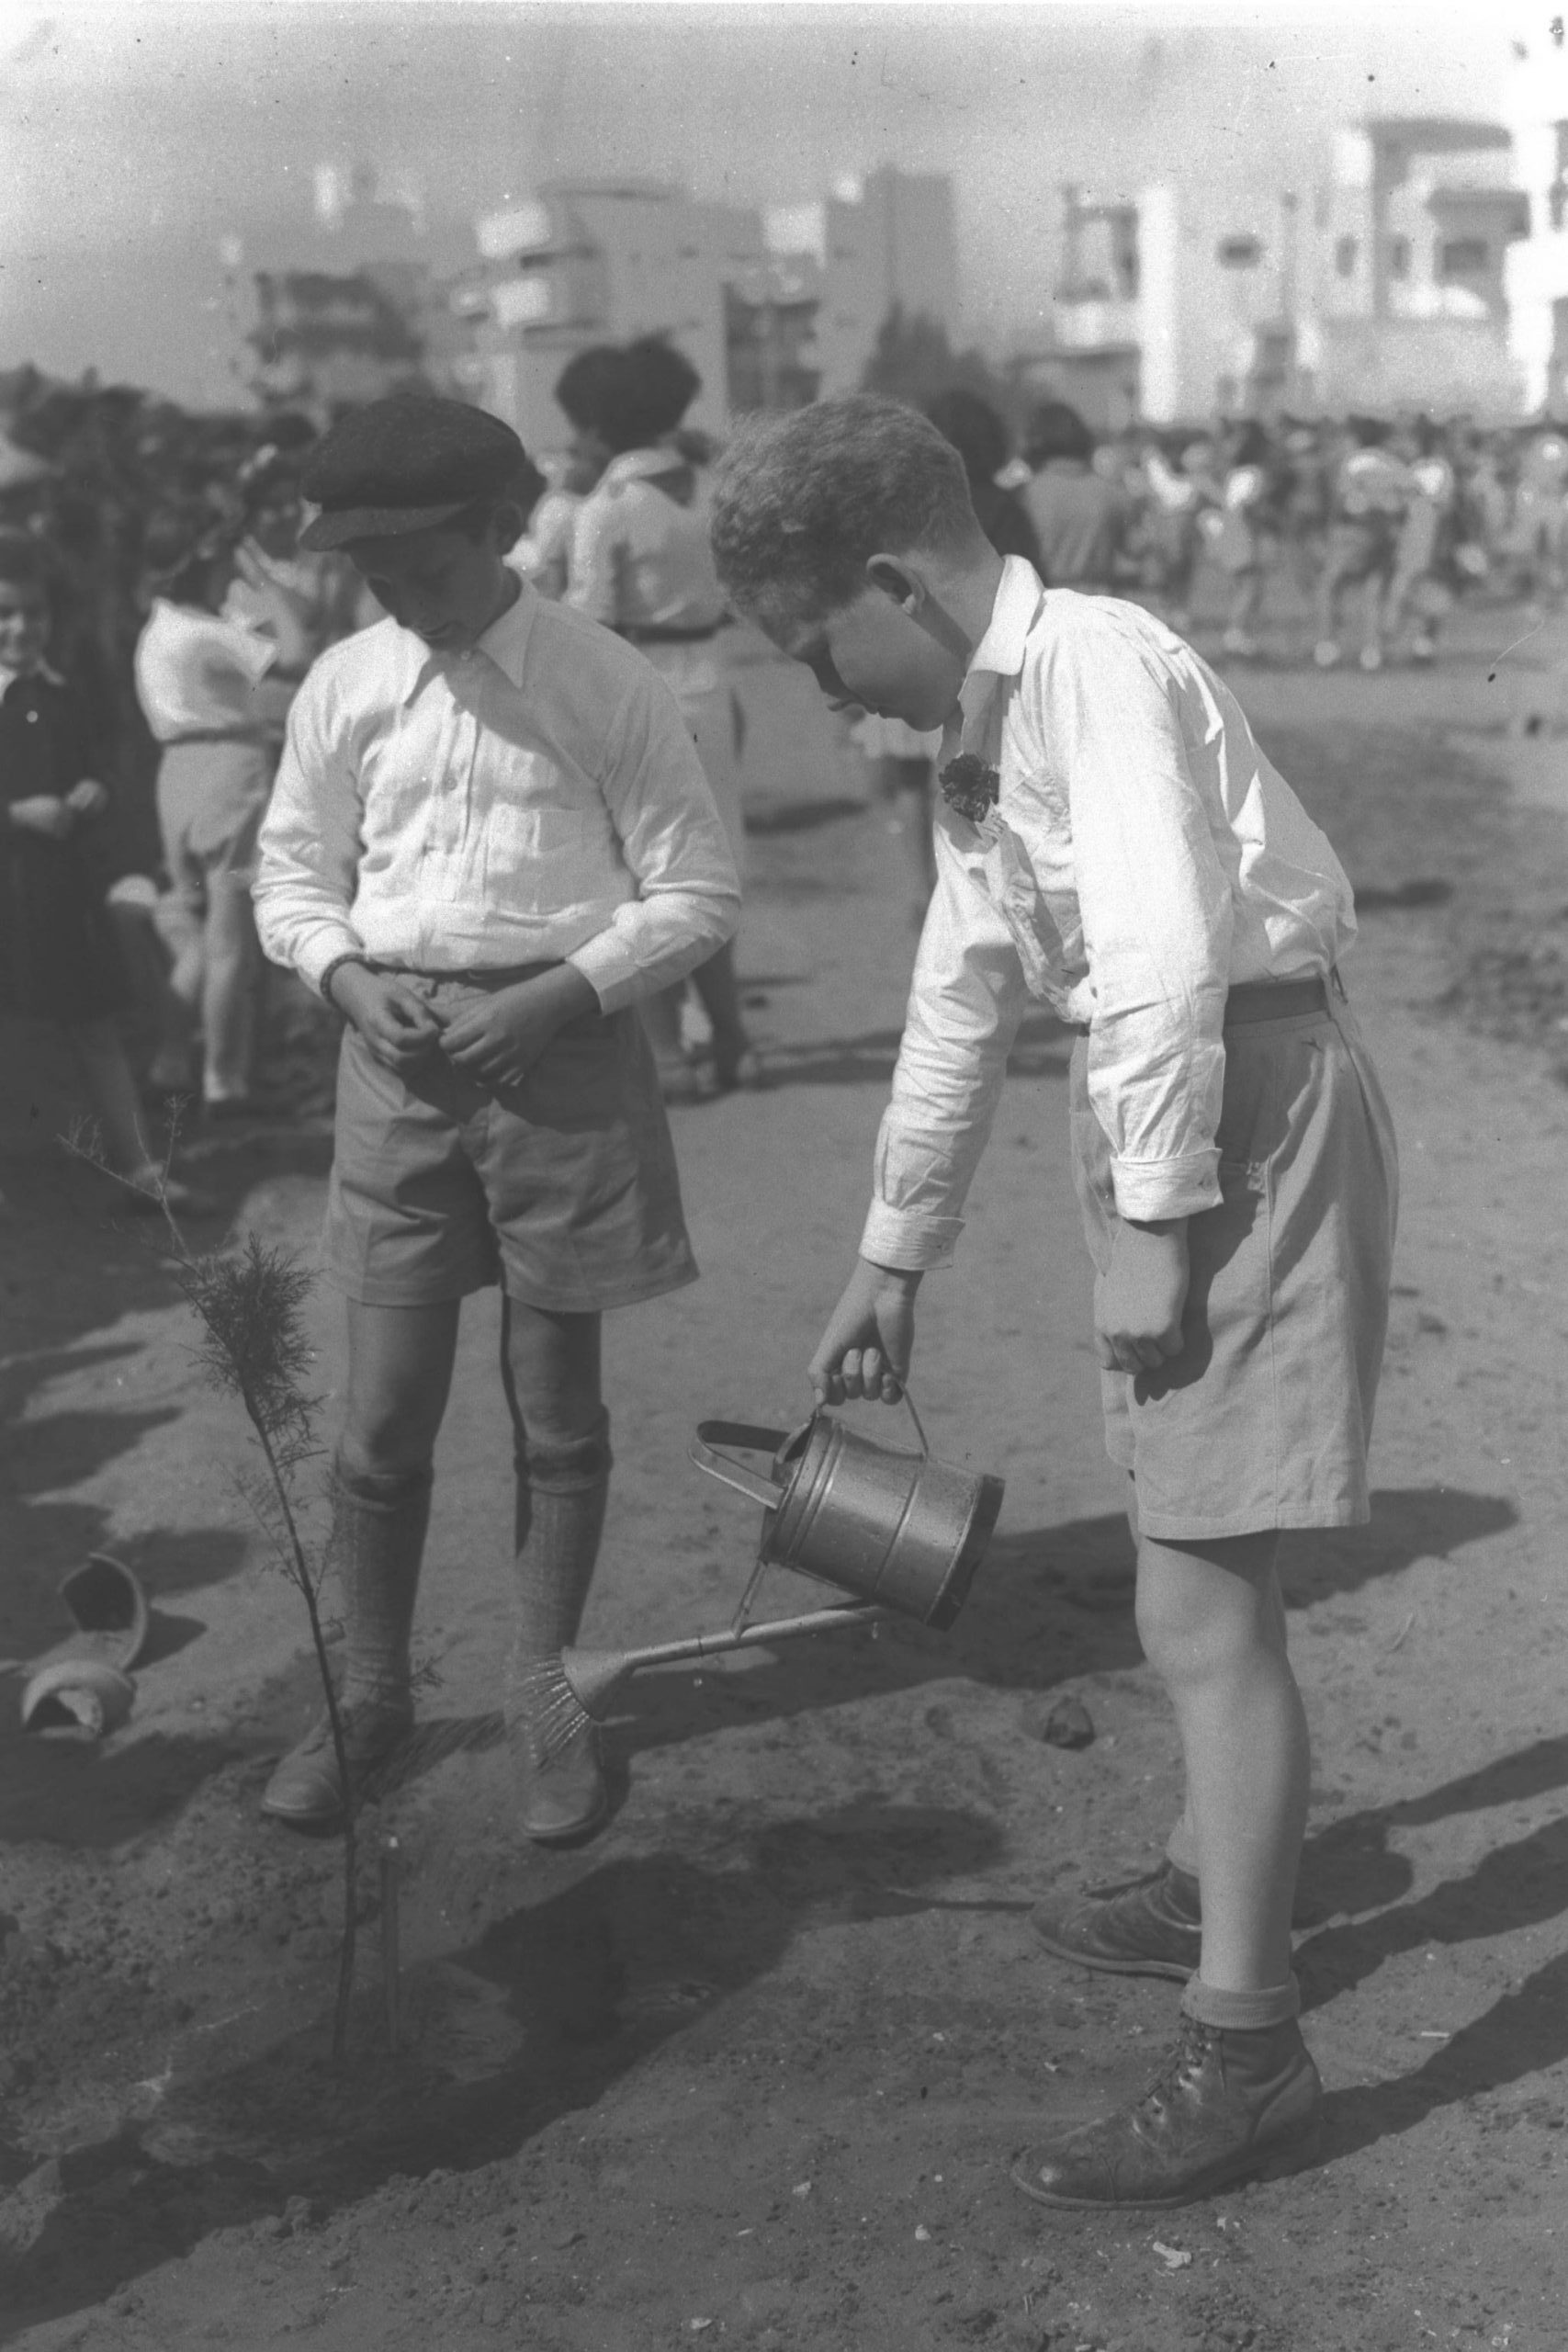 Children planting trees on 15 Shevat along Keren Kayemet Street in Tel Aviv, 1936